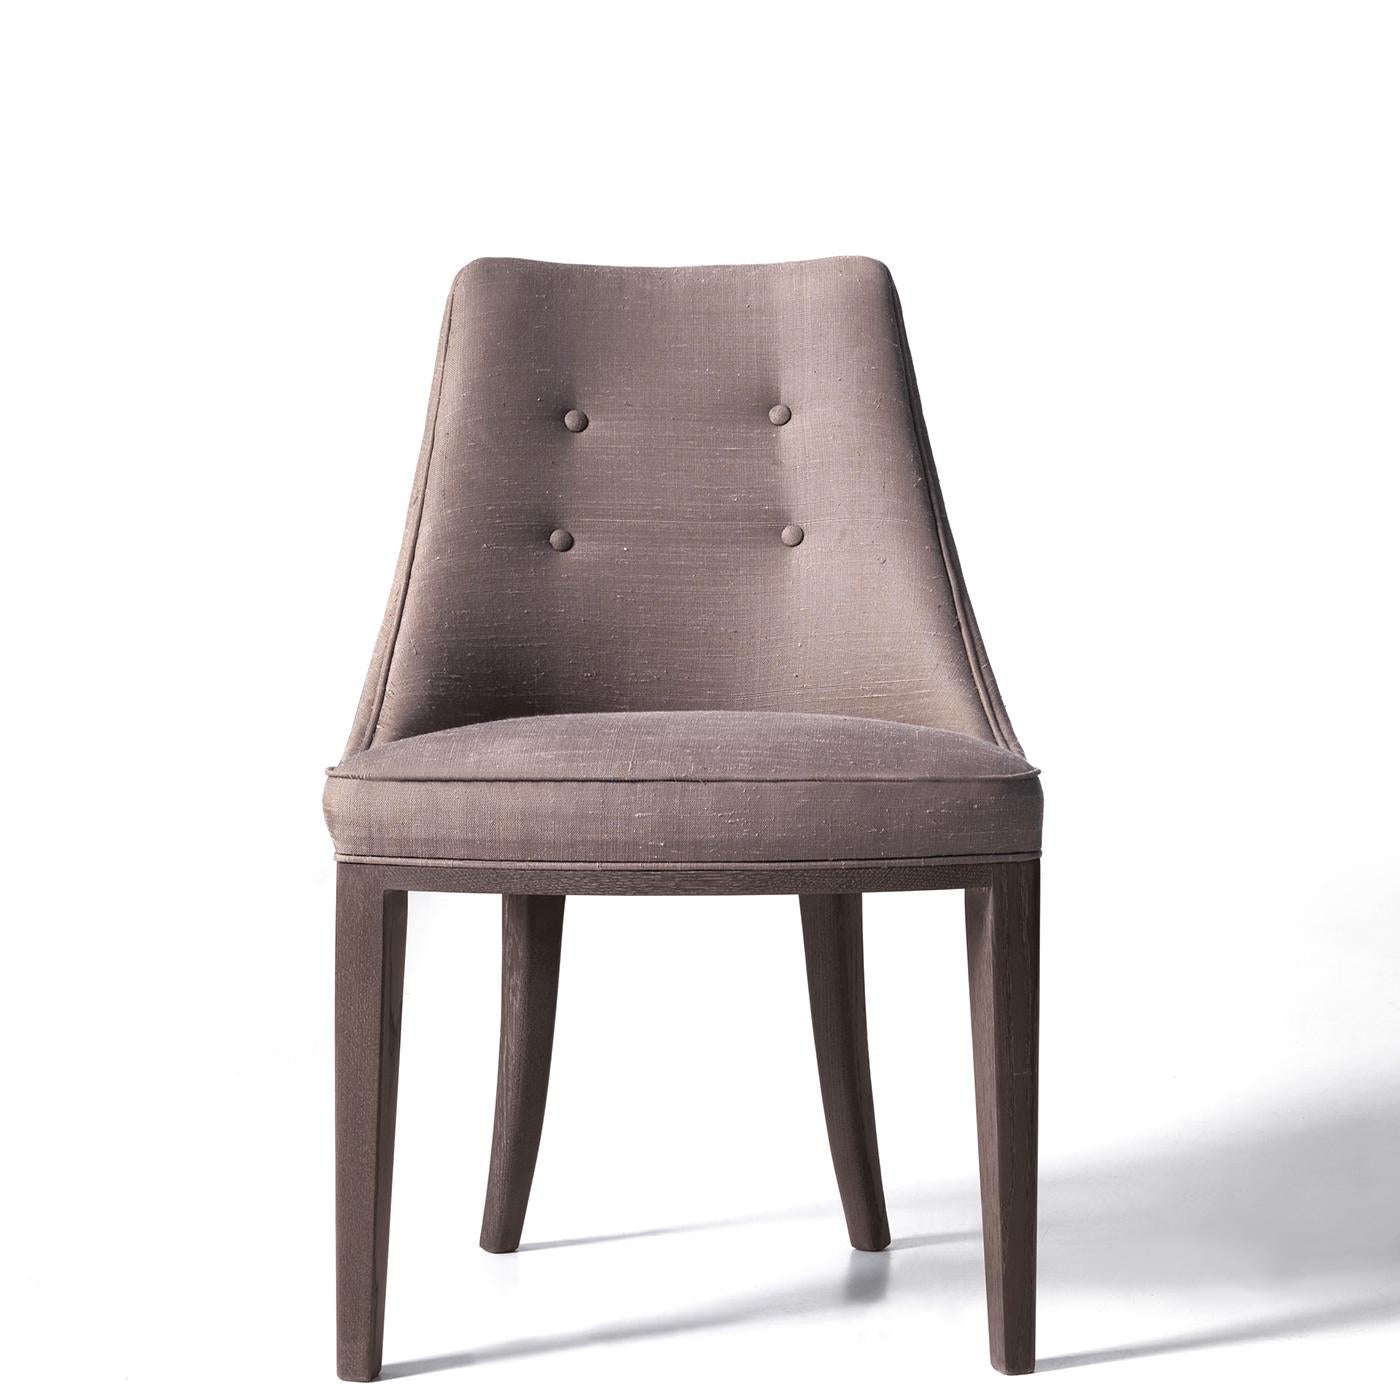 Ein weiches und einladendes Design zeichnet diesen raffinierten Stuhl aus, dessen robuste Hartholzstruktur einen großzügig gepolsterten Sitz und eine geschwungene Rückenlehne aufweist, die beide mit grauem Stoff mit subtilen Knopfakzenten bezogen